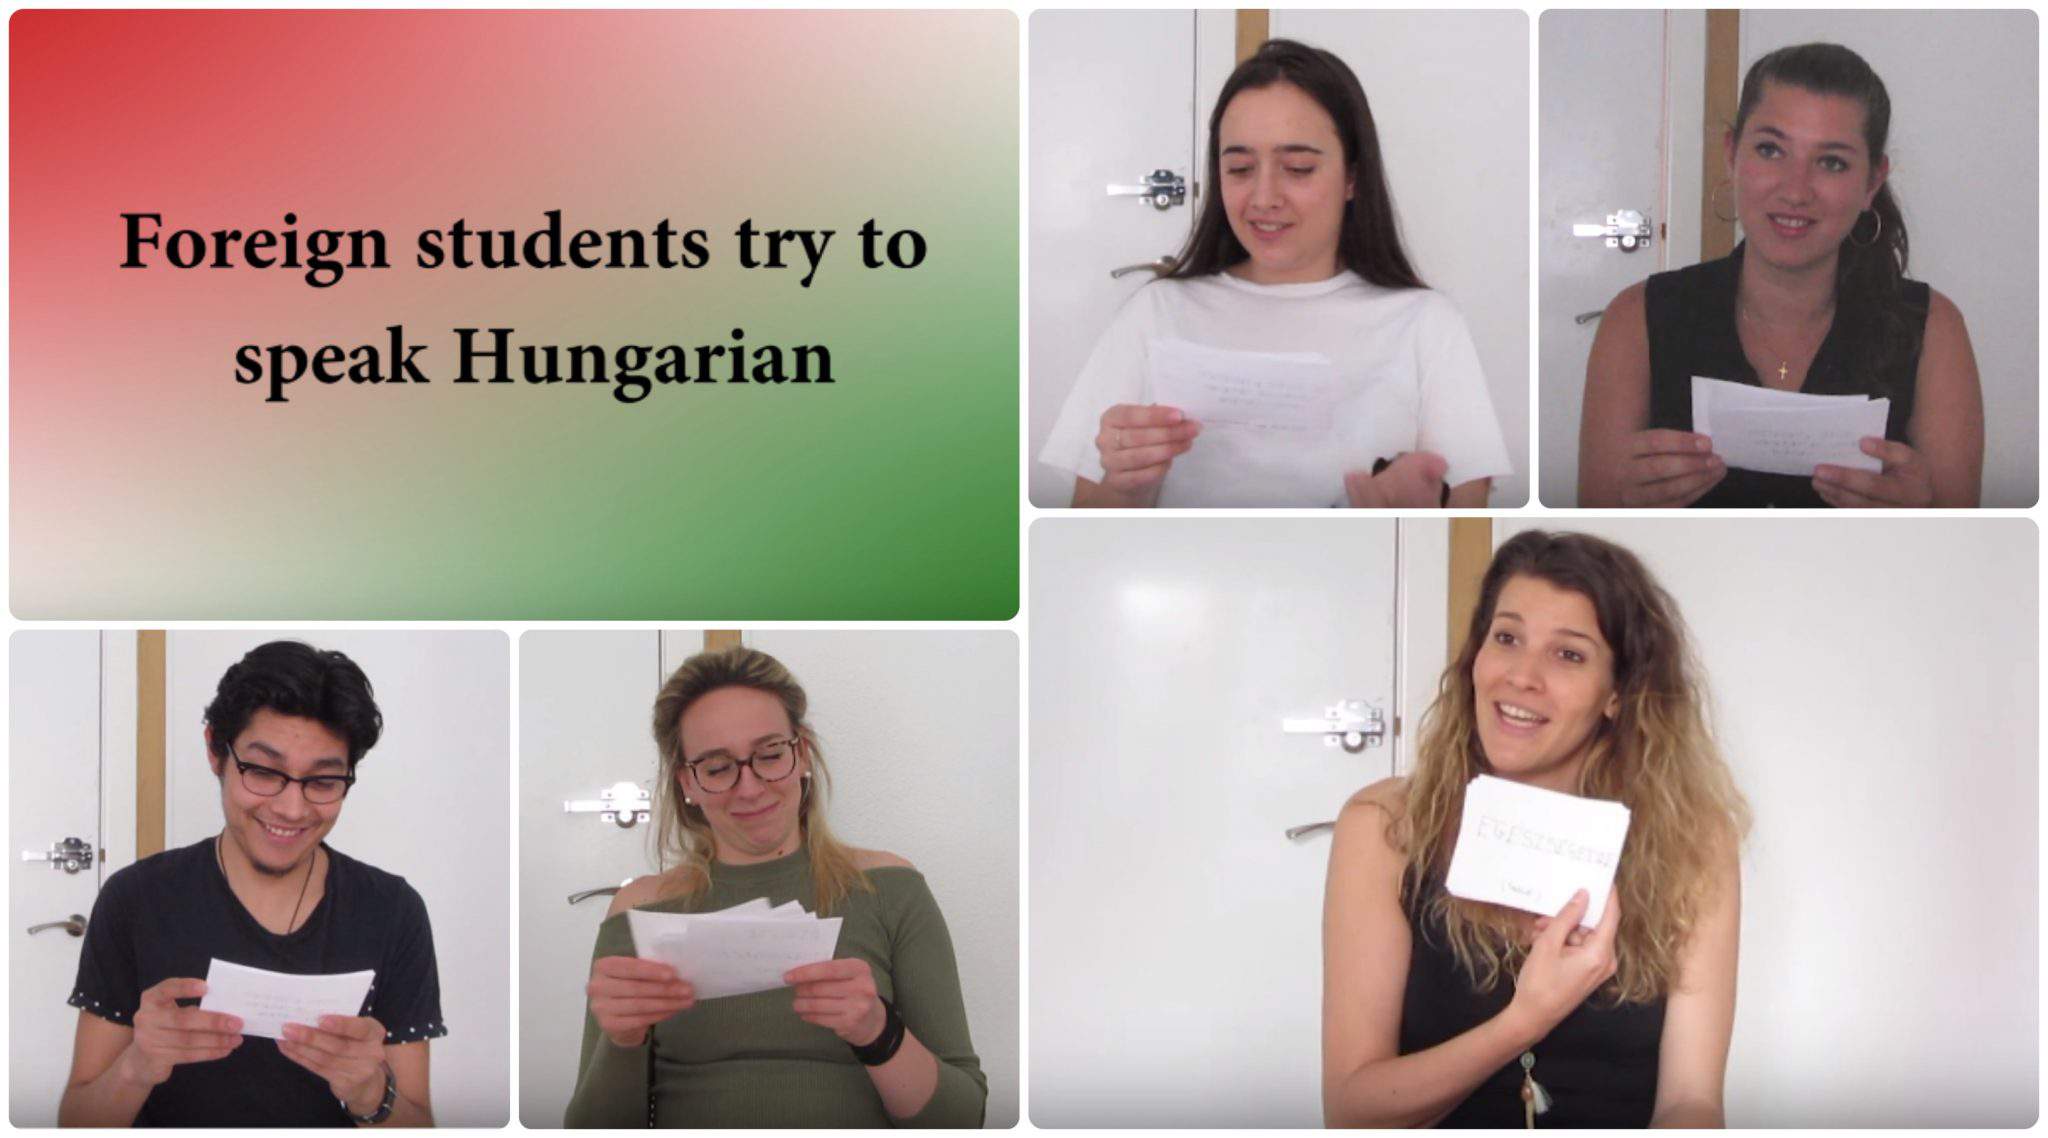 الطلاب الأجانب يتحدثون الهنغارية